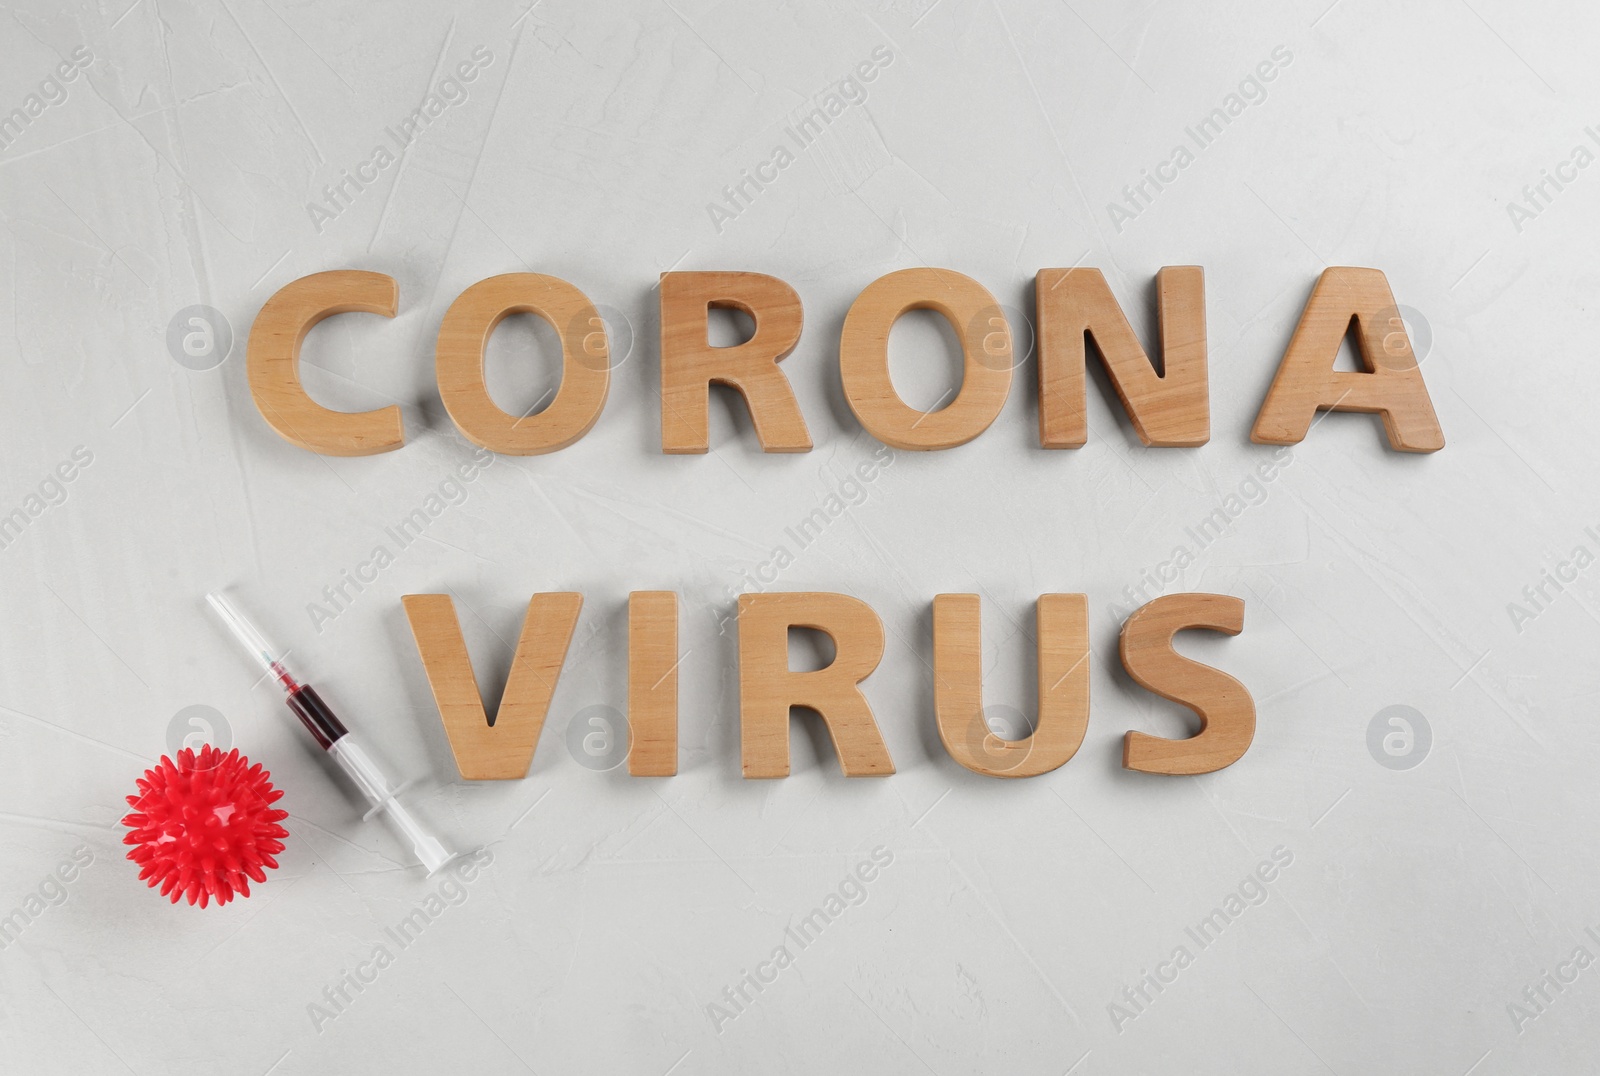 Photo of Words CORONA VIRUS and syringe on light background, flat lay